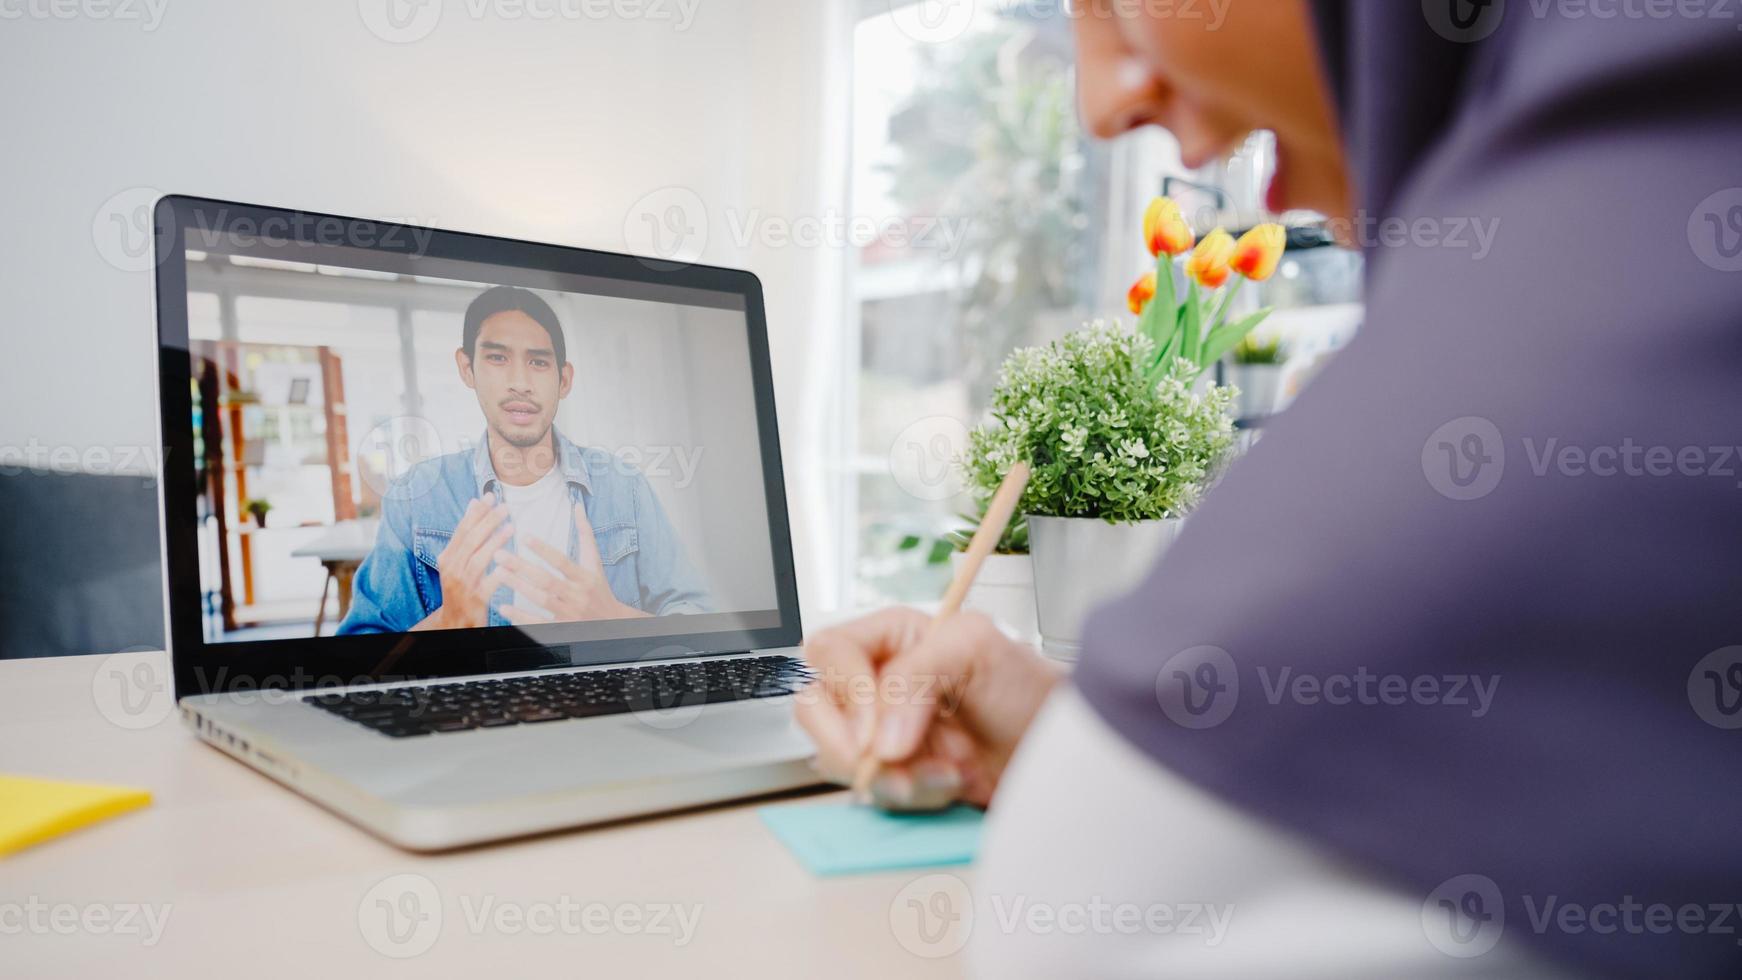 Asia empresaria musulmana que usa una computadora portátil hable con un colega sobre el plan mediante una videollamada para una reunión en línea mientras trabaja de forma remota desde su casa en la sala de estar. distanciamiento social, cuarentena por coronavirus foto